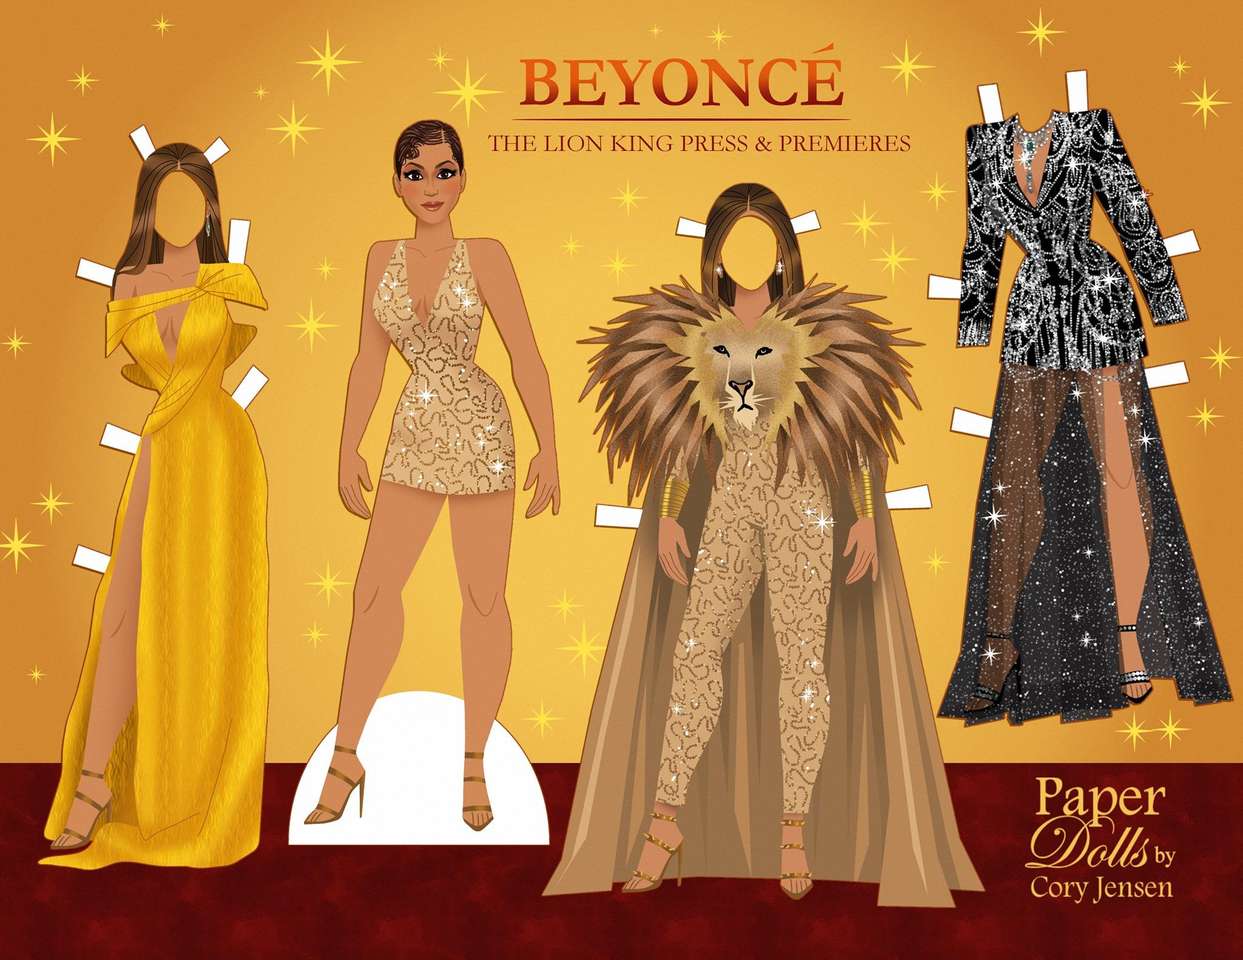 Beyonce für alleinstehende Damen - in Papier gekleidet Puzzlespiel online